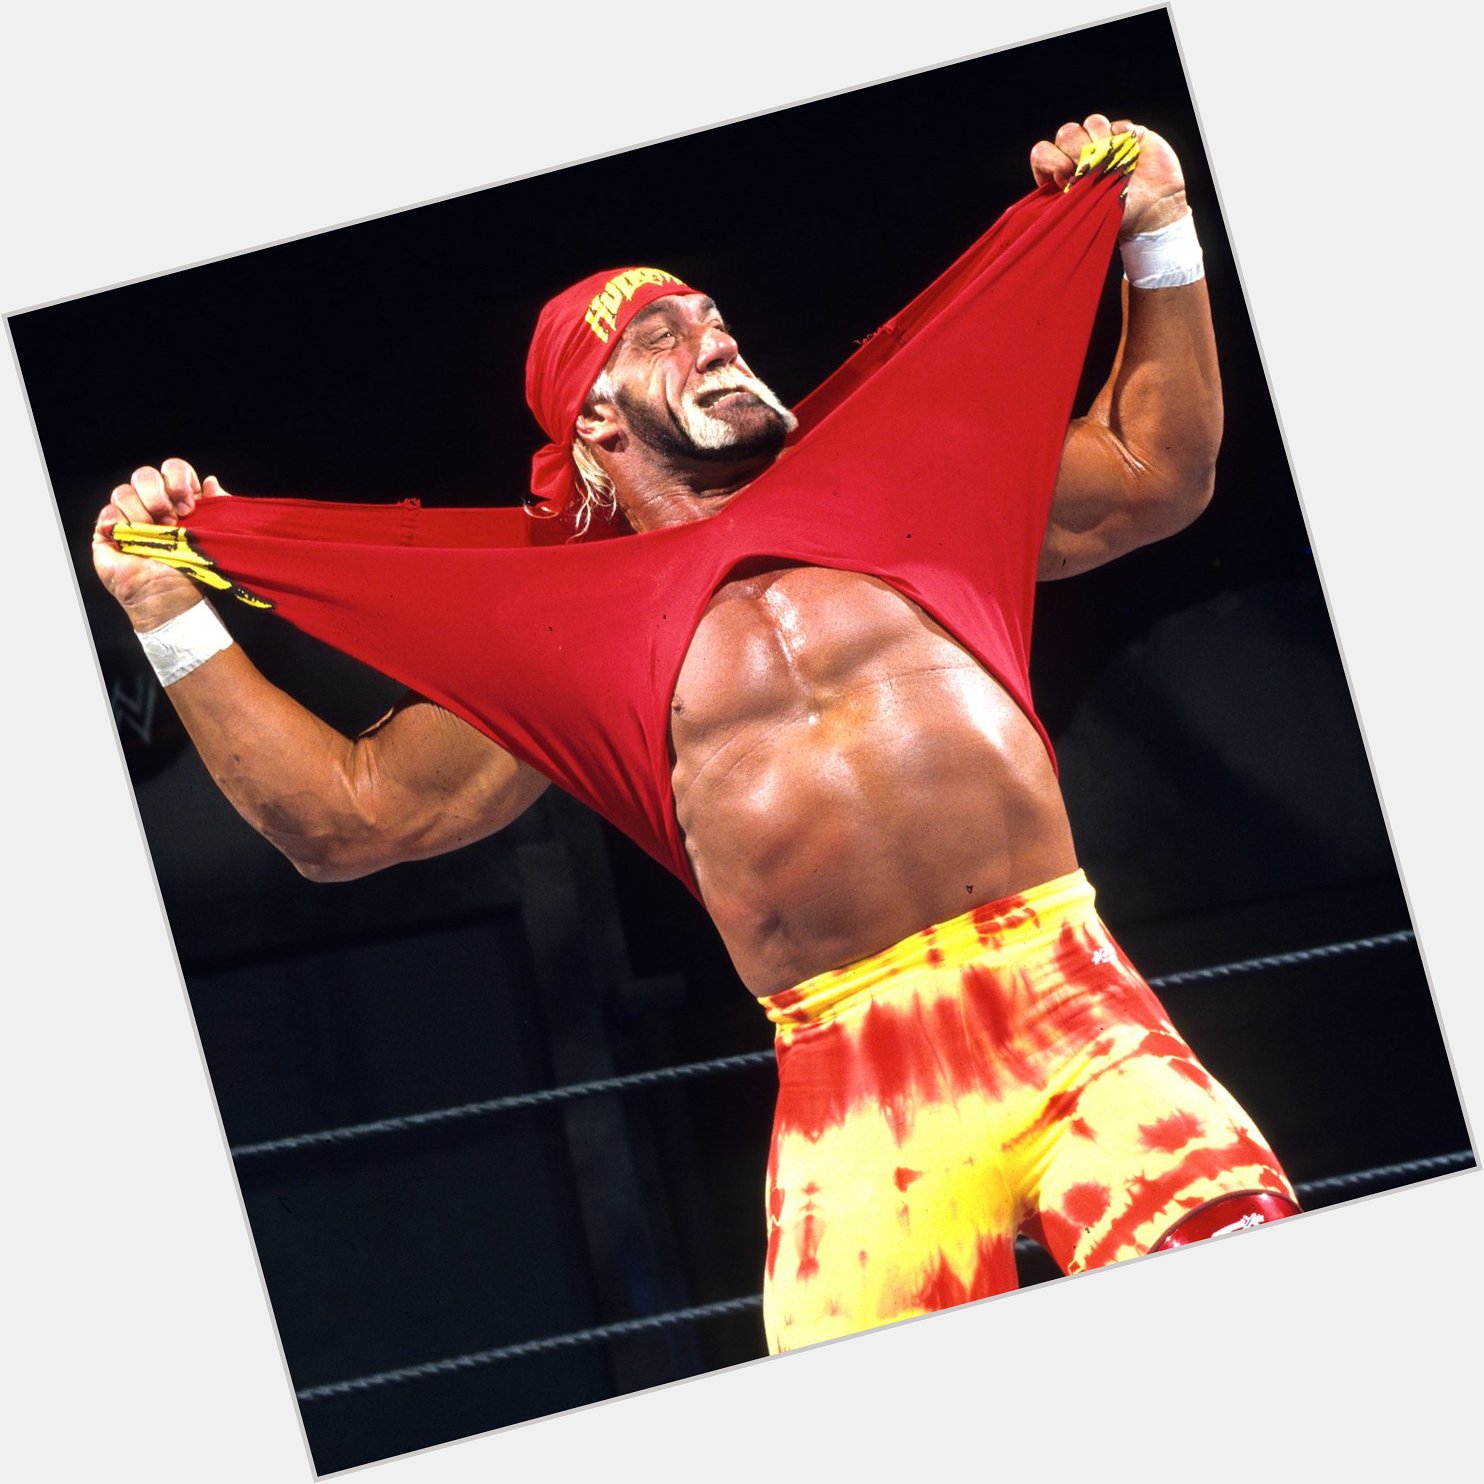 Happy birthday to Hulk Hogan 